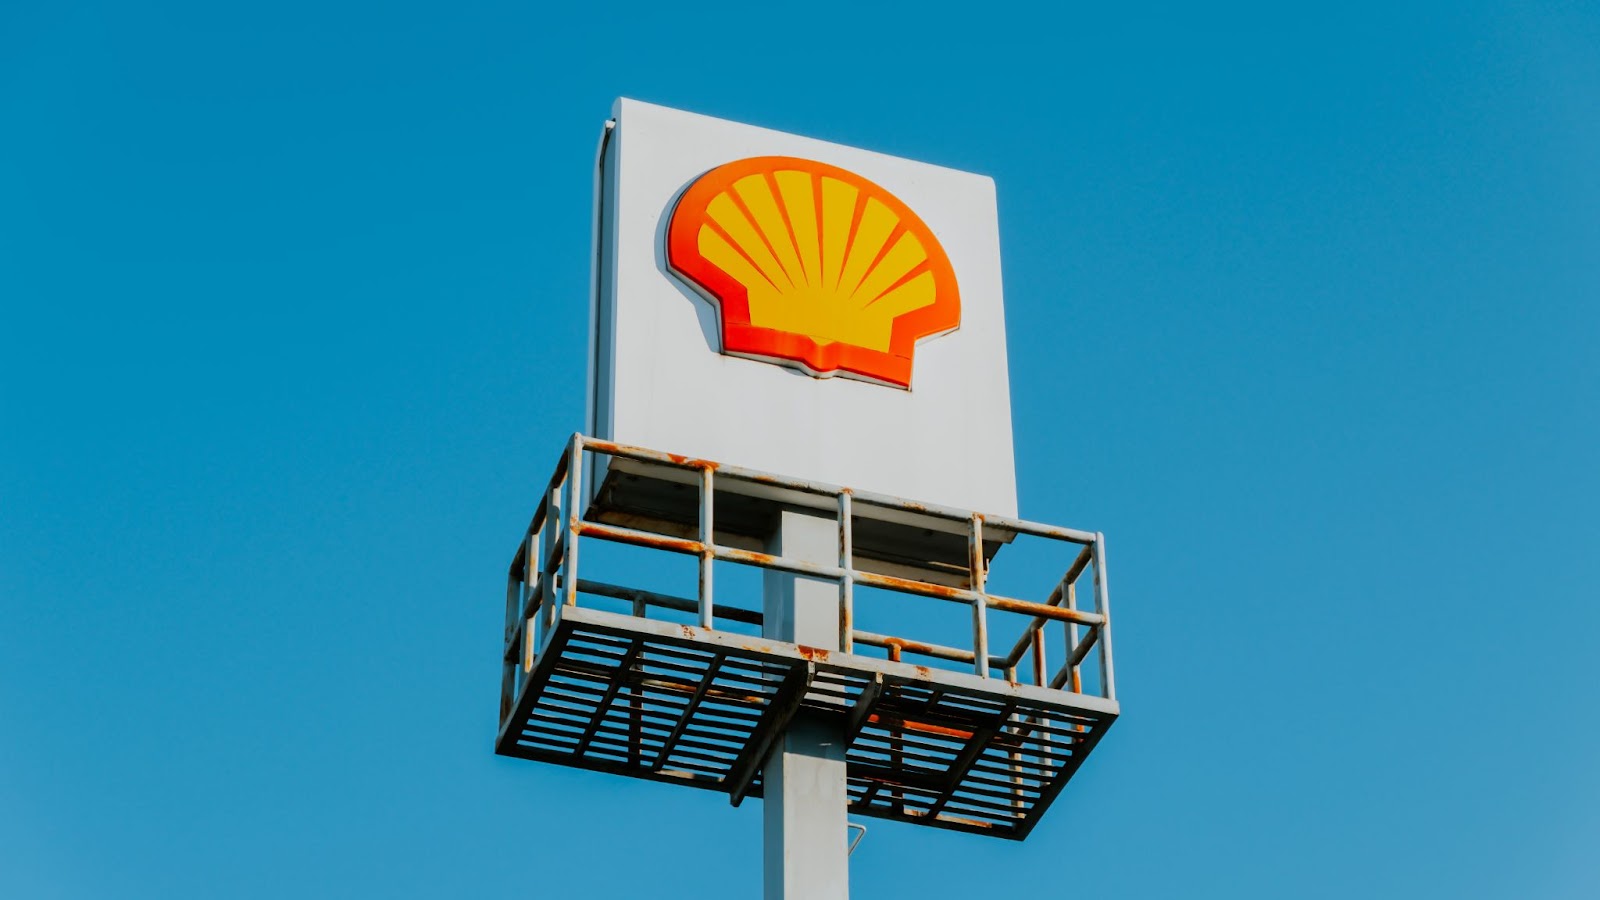 Tut Shell genug für den Klimaschutz?